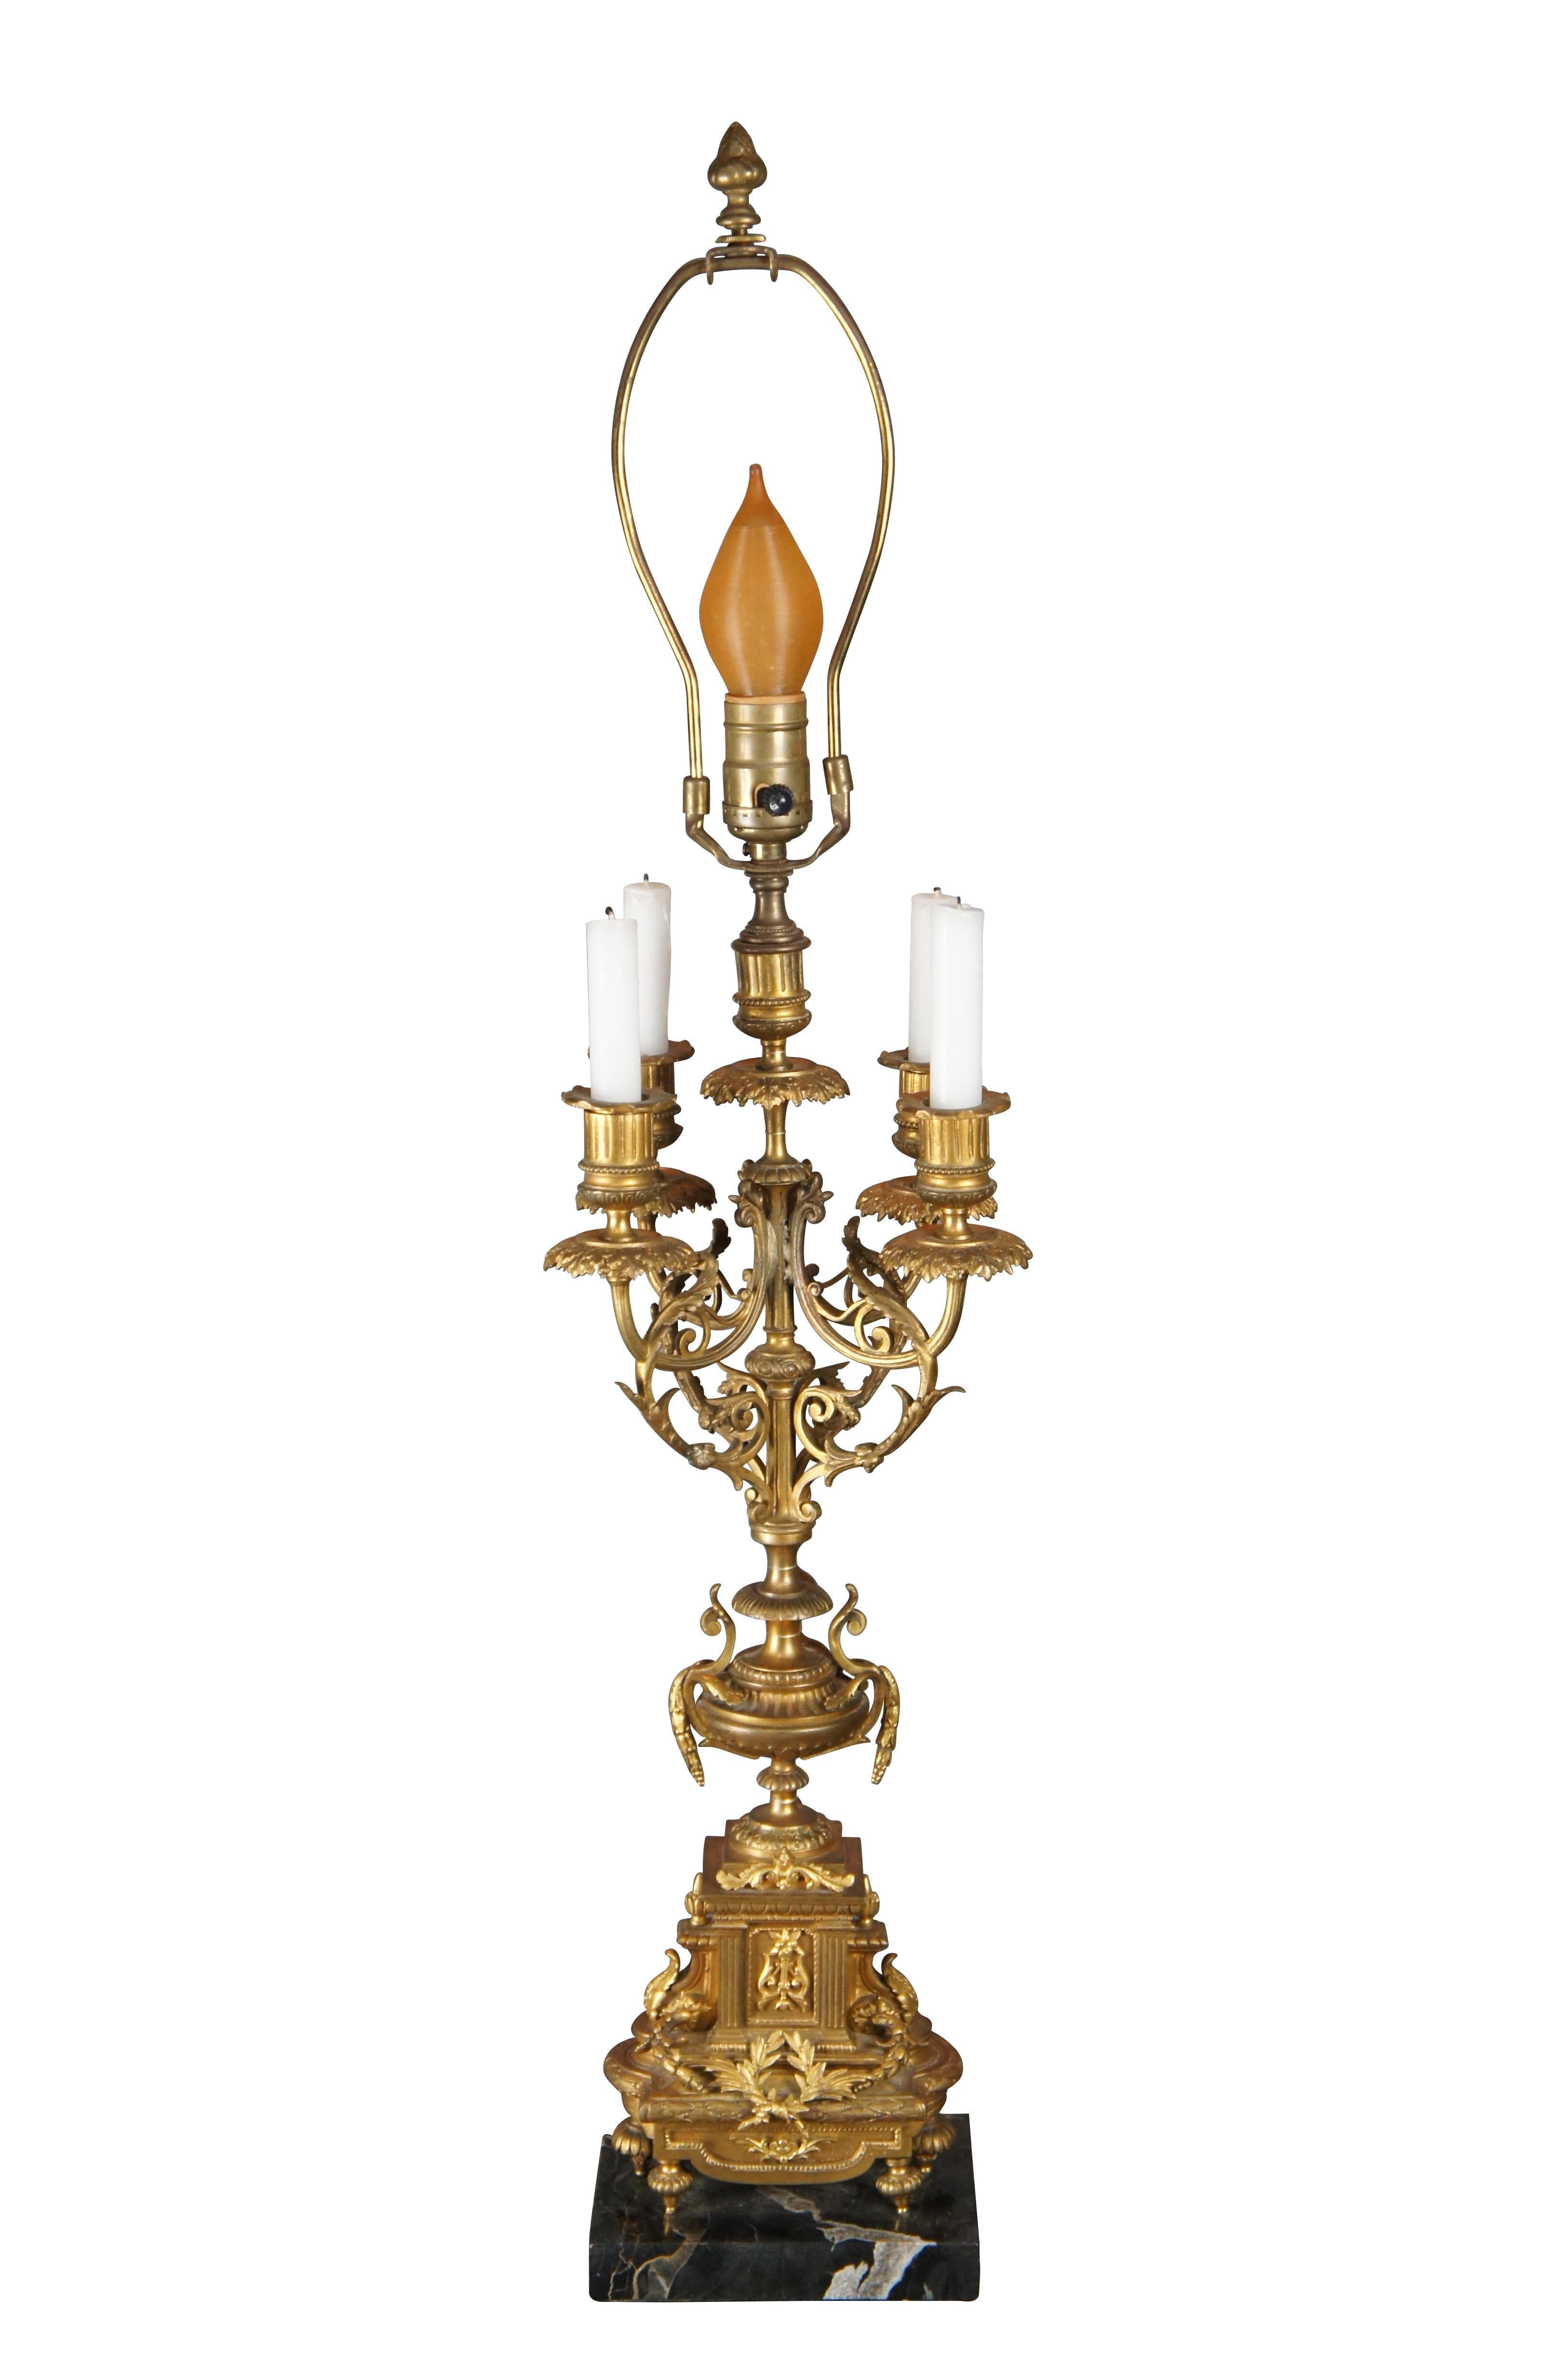 Un élégant candélabre transformé de style Louis XVI. Finition en laiton doré avec des motifs classiques sur une base à pieds sur un socle en marbre noir. Les accoudoirs sont chantournés avec des accents d'acanthe et des gouttières ornées. Une lampe